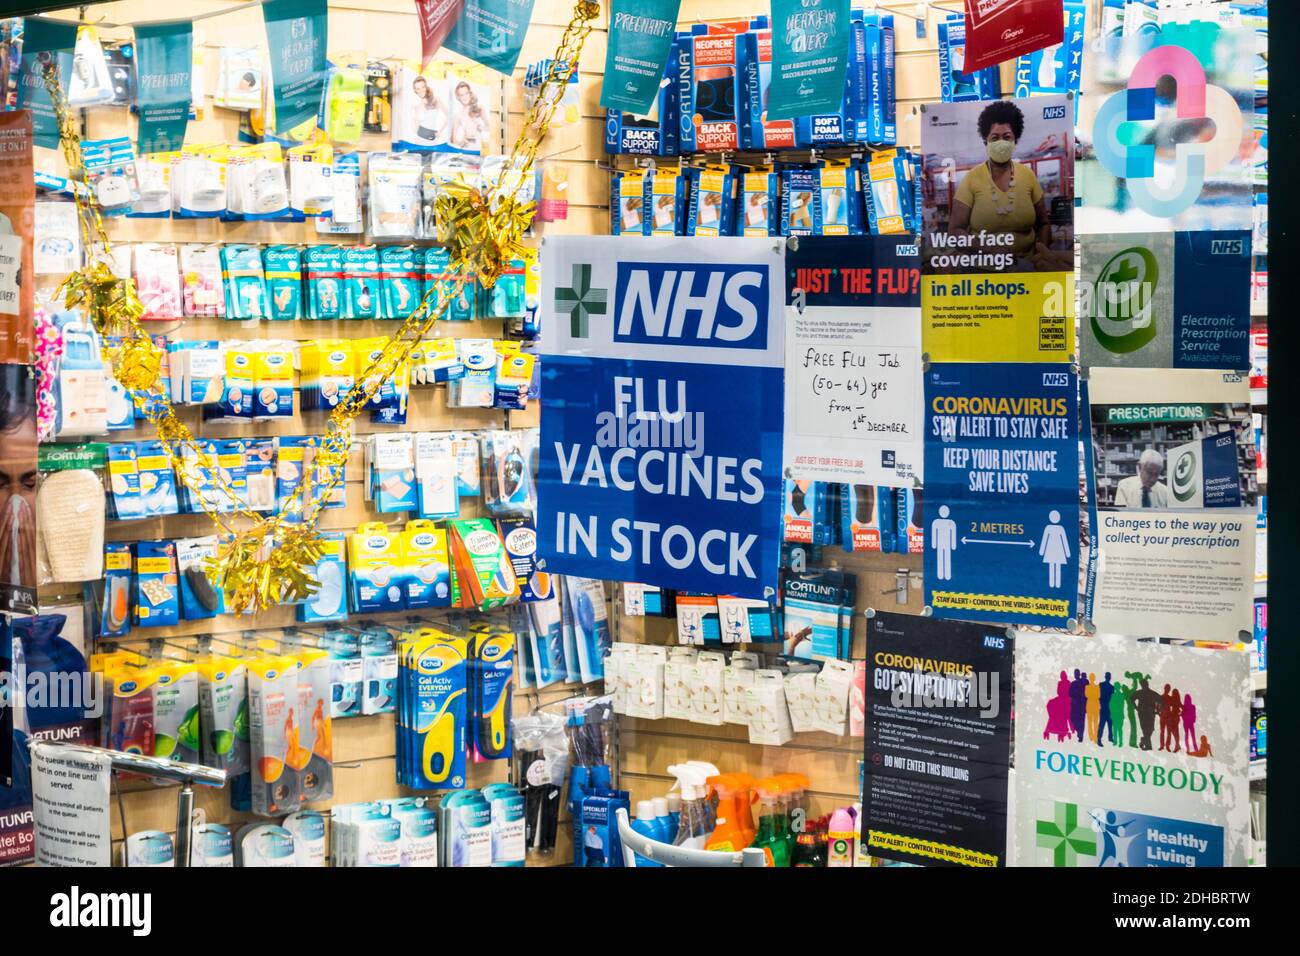 NHS Flu Jab / vaccins en stock panneau de notification sur la porte d'une pharmacie indépendante à Barbican, Londres Banque D'Images